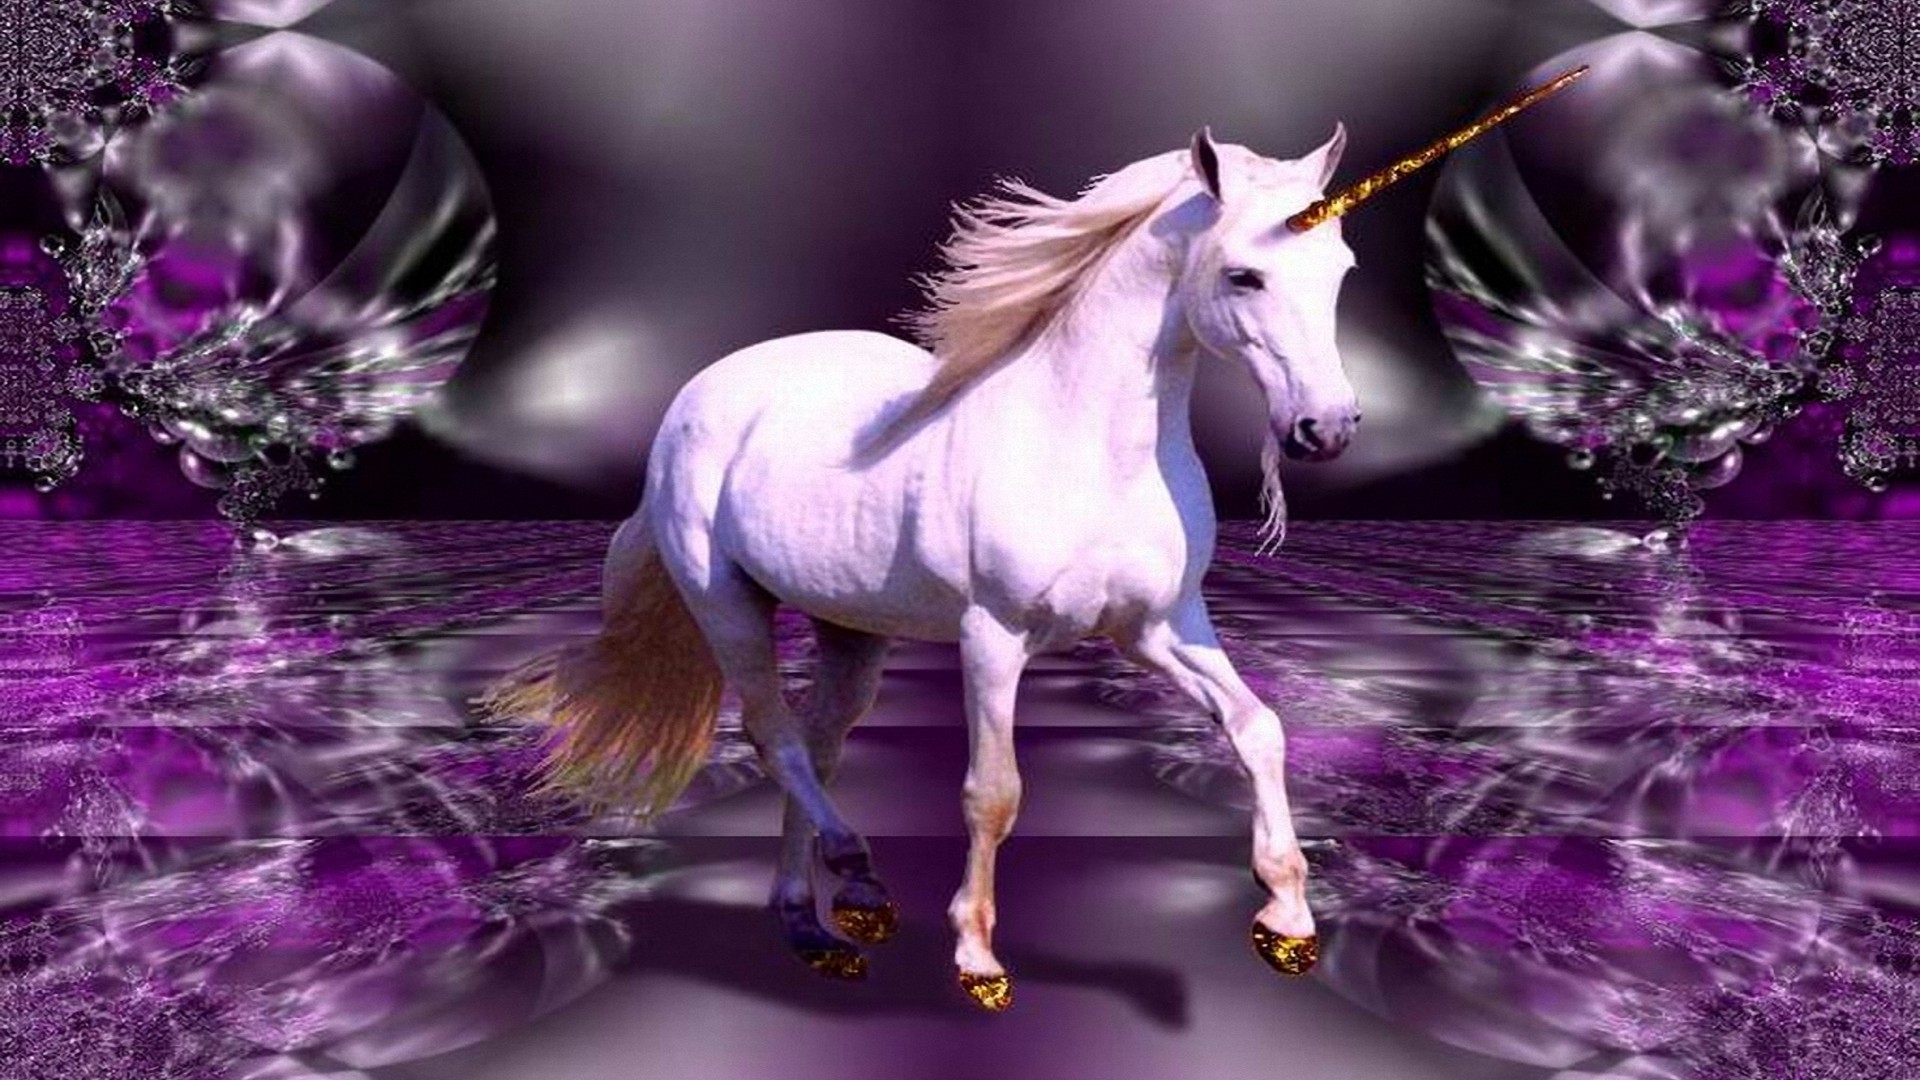 fond d'écran licorne hd,licorne,personnage fictif,créature mythique,violet,lavande